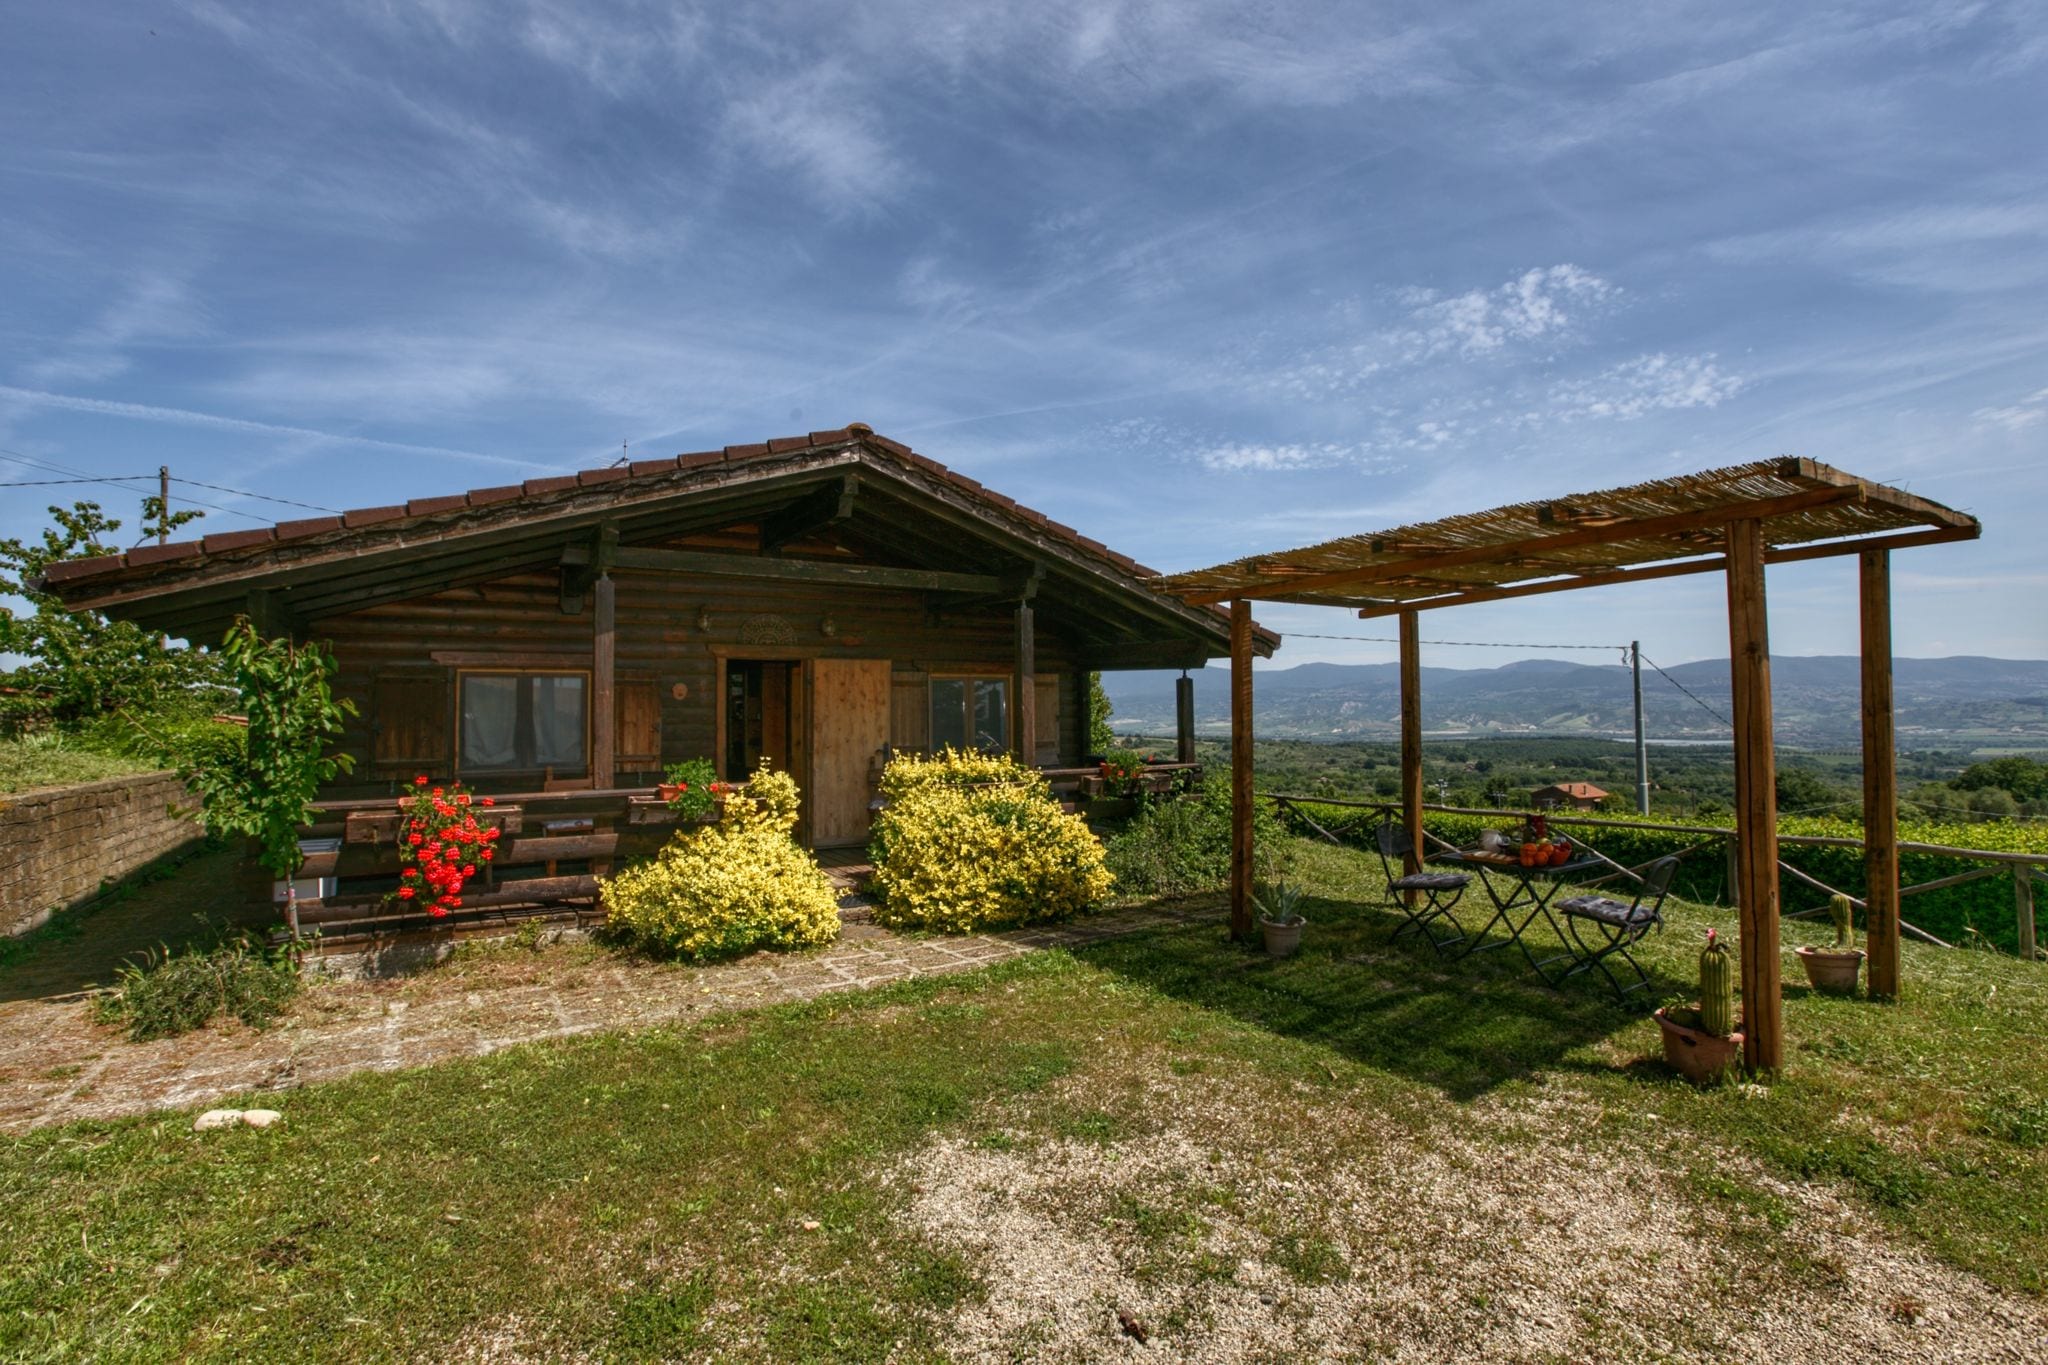 Hübsches Cottage mit Swimmingpool in Graffignano Italien